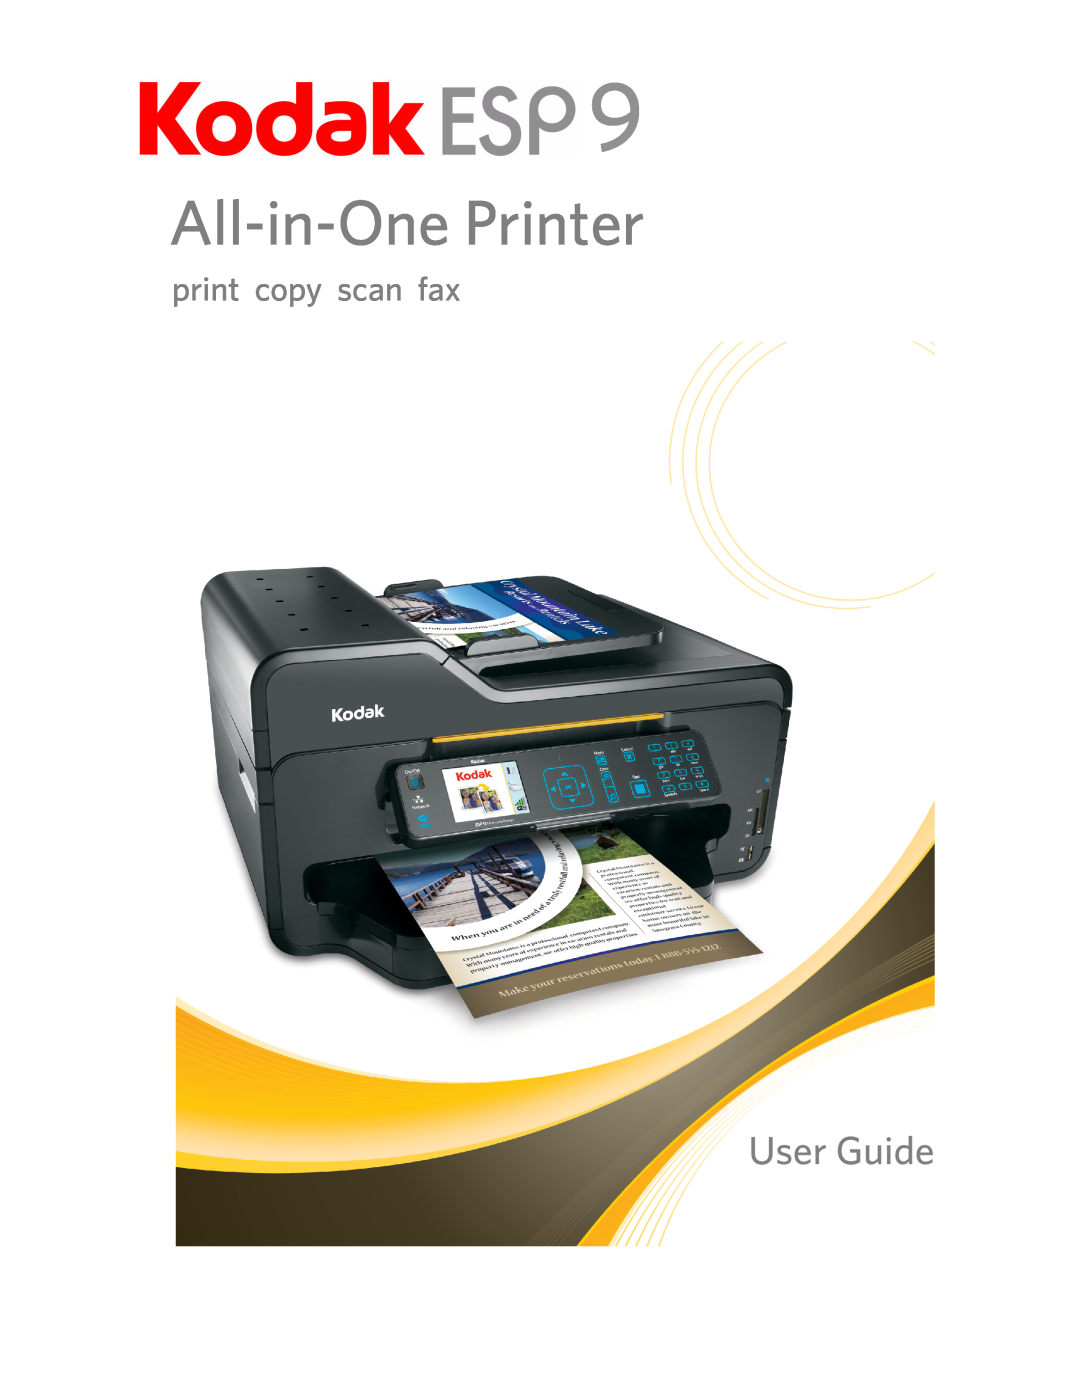 Kodak ESP 9 manual All-in-One Printer, User Guide, print copy scan fax 